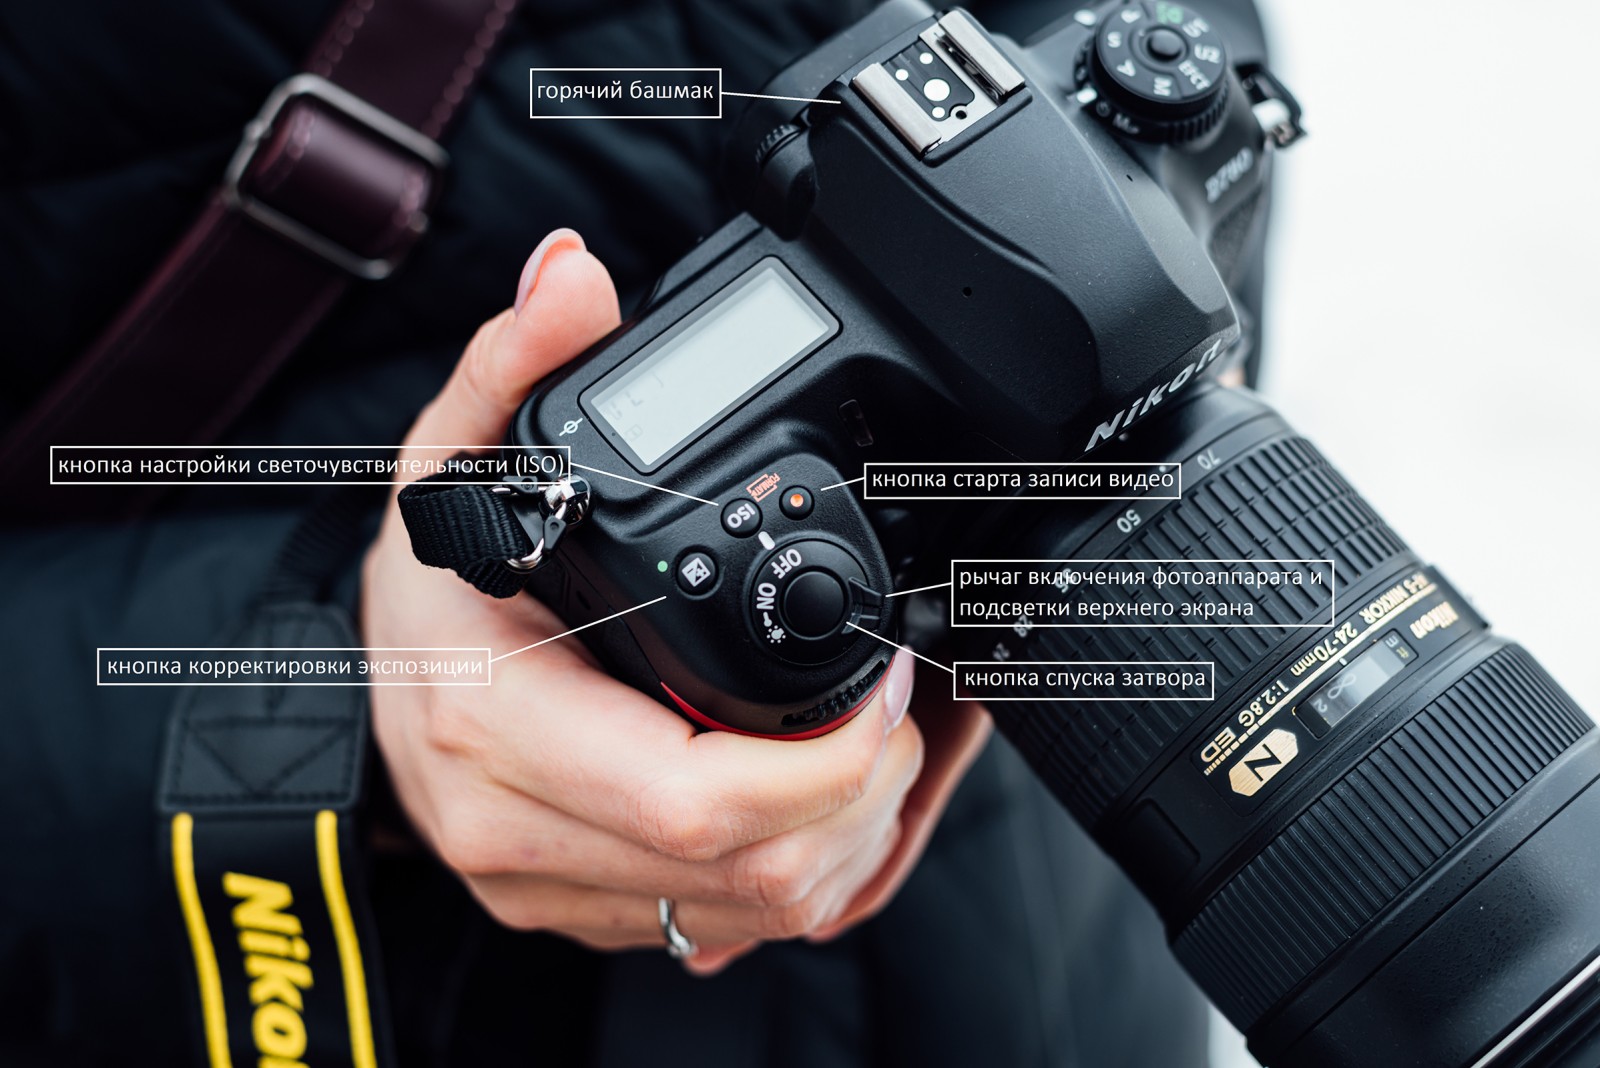 Обзор новинки Nikon D780 от Олега Гулякова